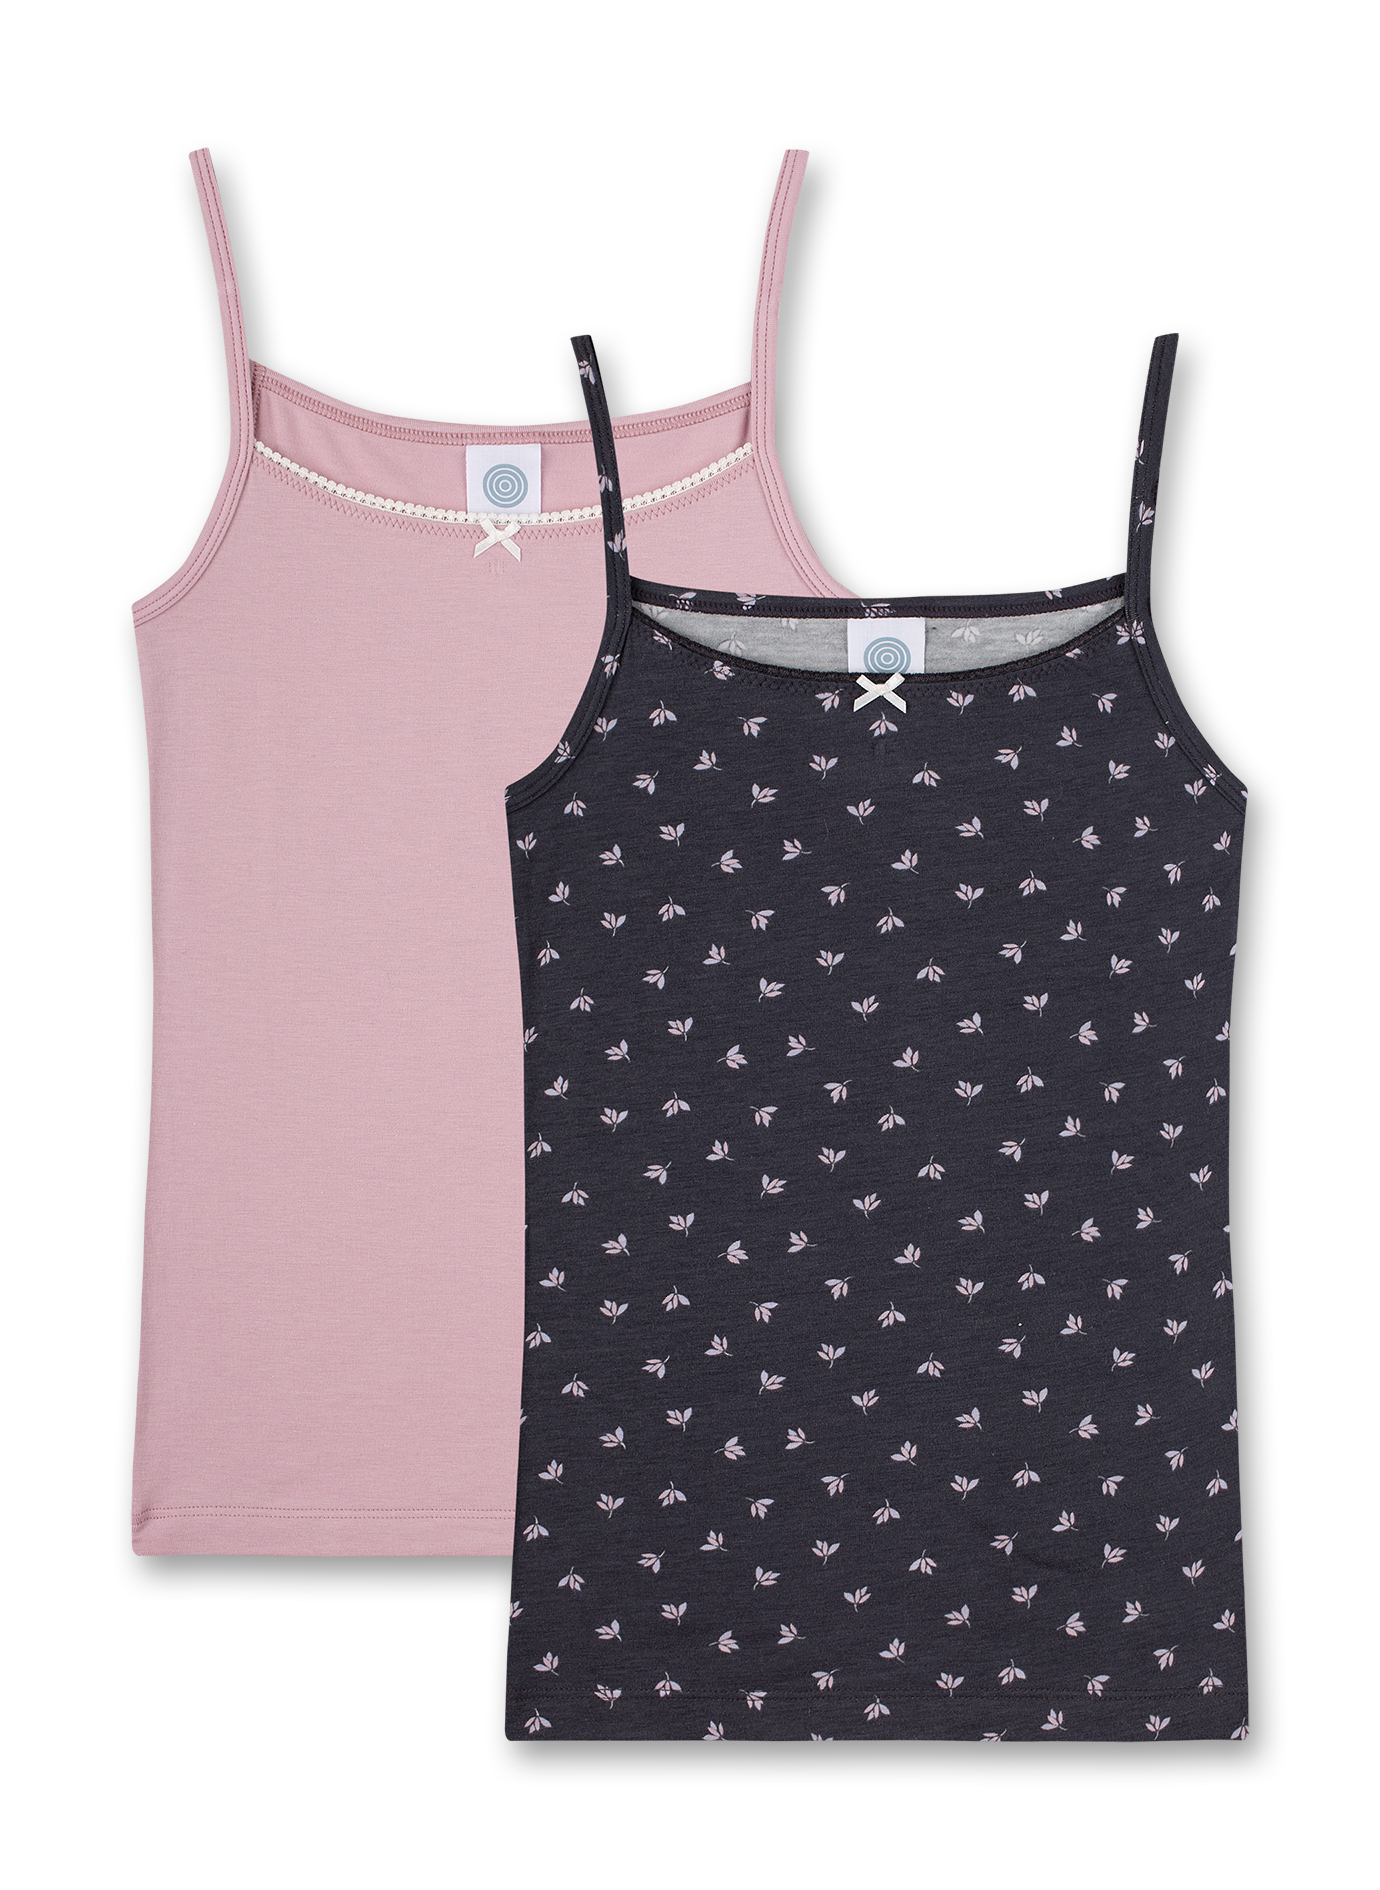 Mädchen-Unterhemd (Doppelpack) Dunkelgrau und Rosa